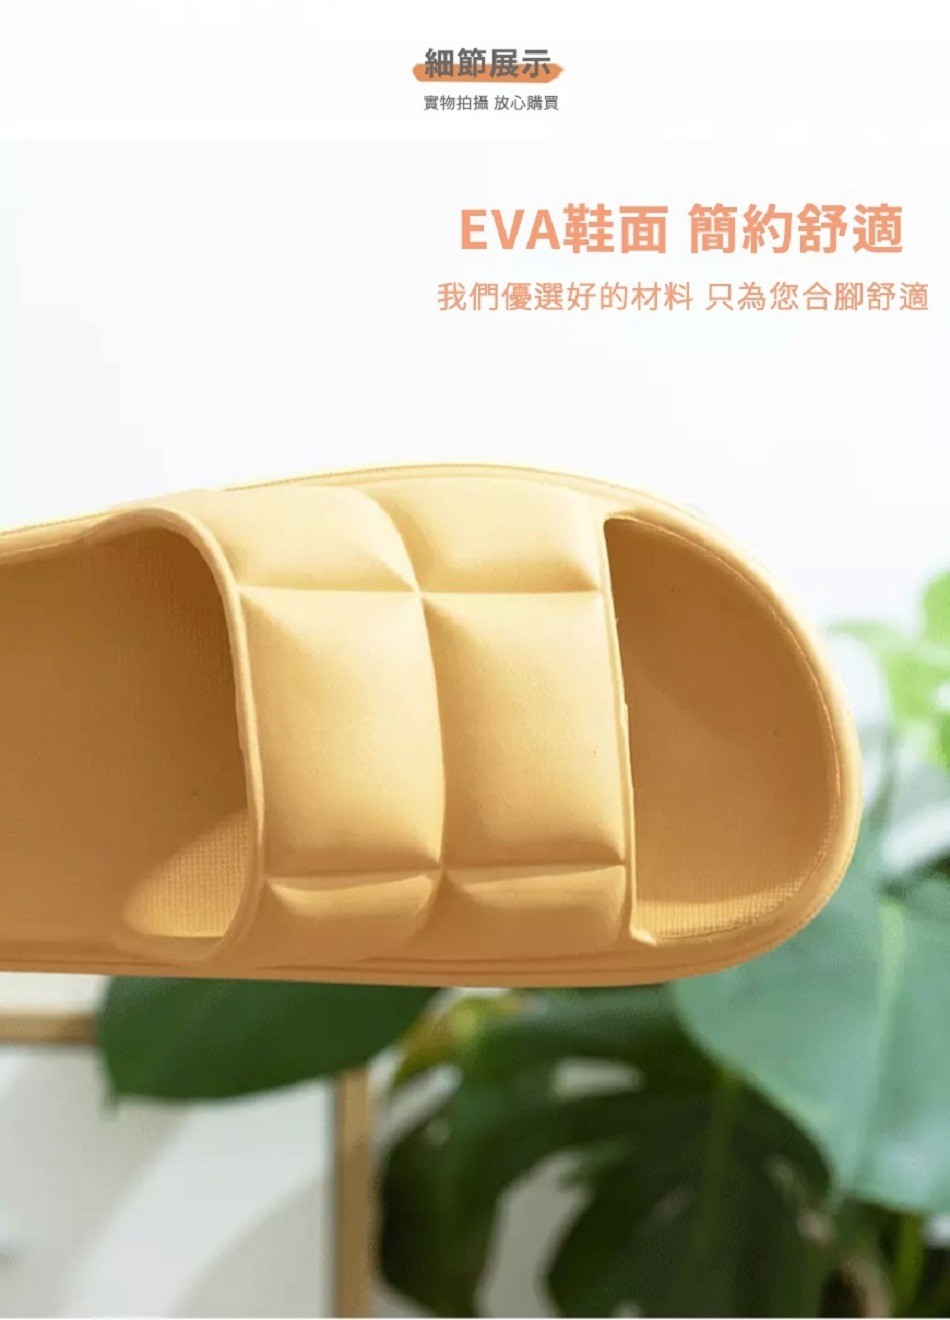 細節展示，實物拍攝放心購買，EVA鞋面簡約舒適，我們優選好的材料只為您合腳舒適。